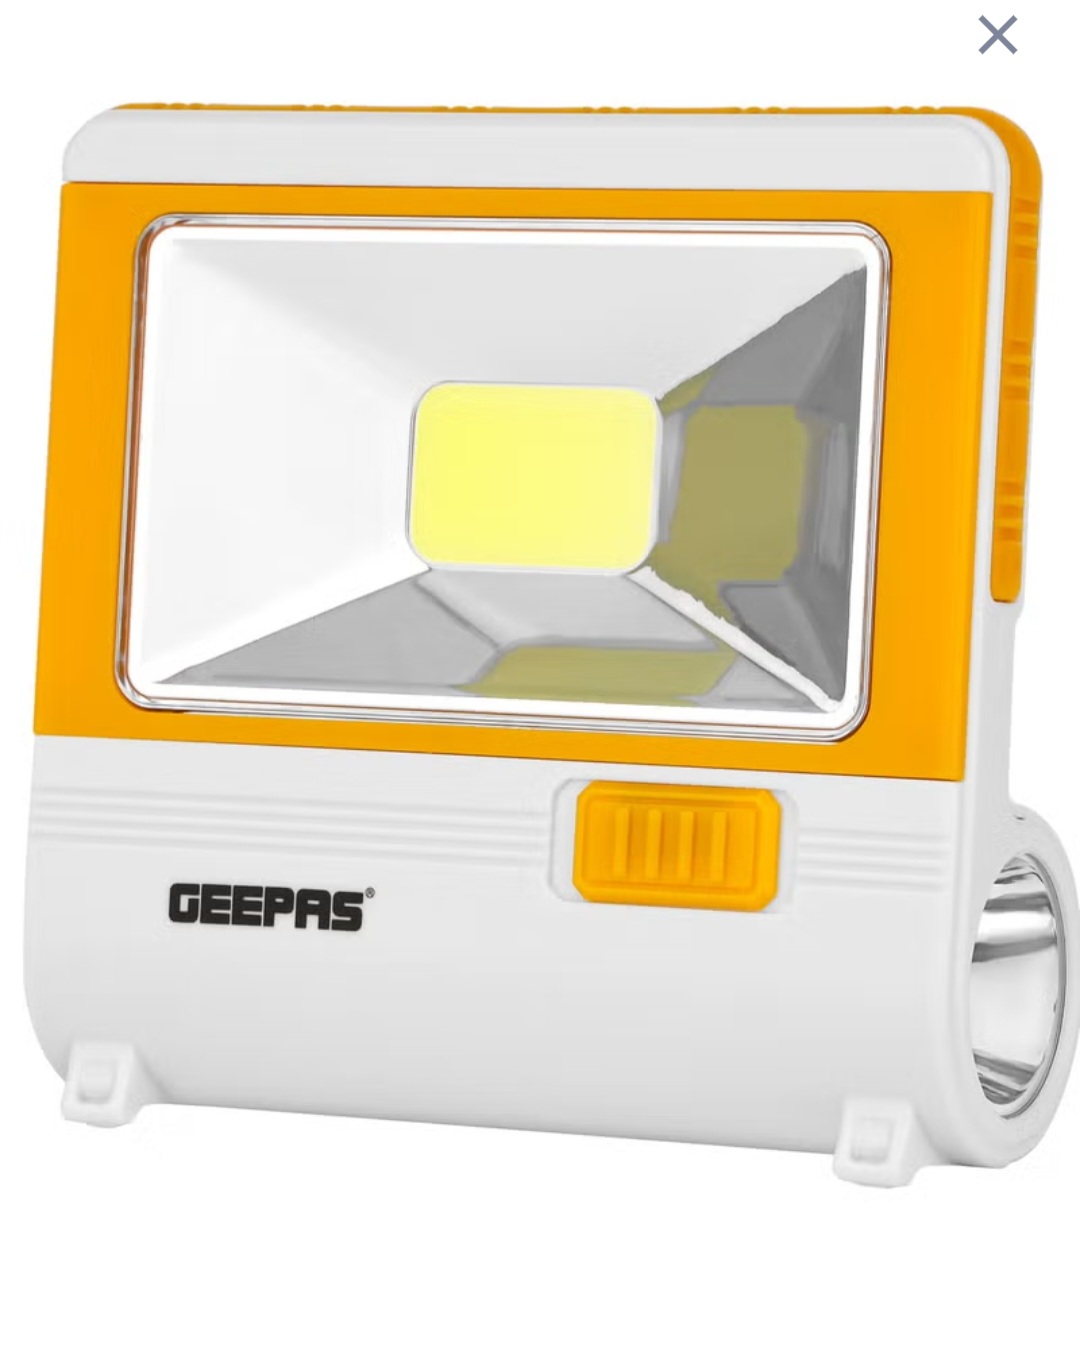 چراغ اضطراری   ال ای دی جیپاس hi power با پنل خورشیدی مدلGeepas GE53036/ارسال رایگان